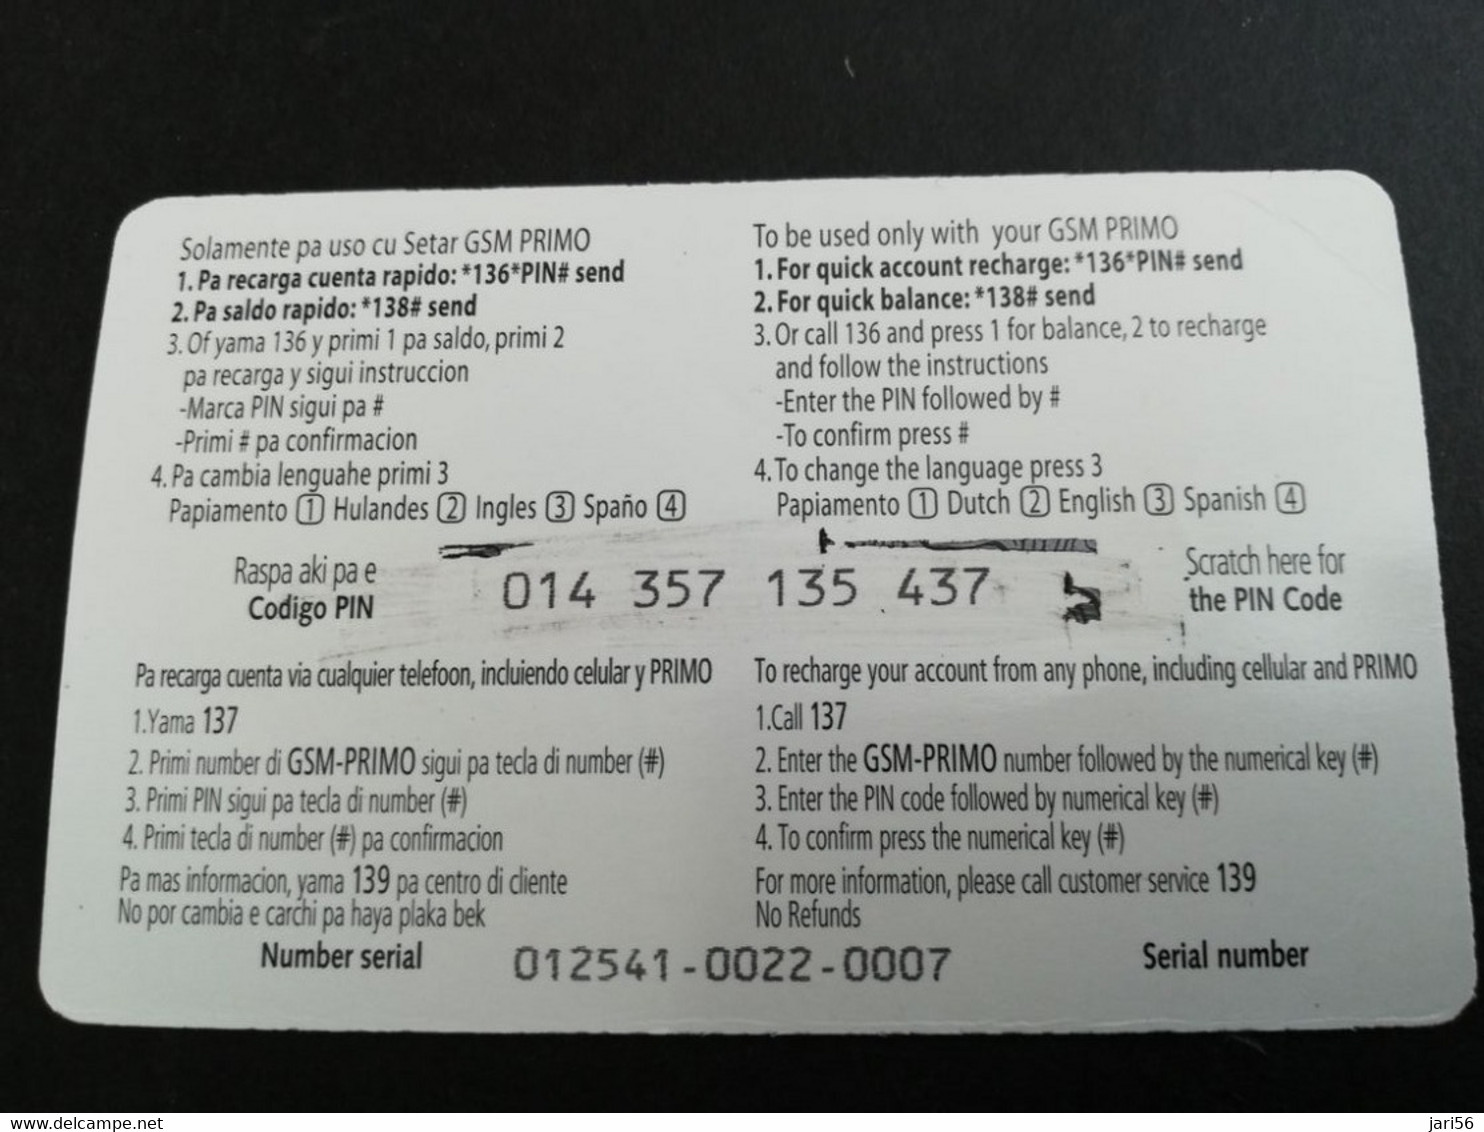 ARUBA PREPAID CARD  GSM PRIMO  SETAR  SAILING BOATS          AFL 50,--    Fine Used Card  **5886** - Aruba